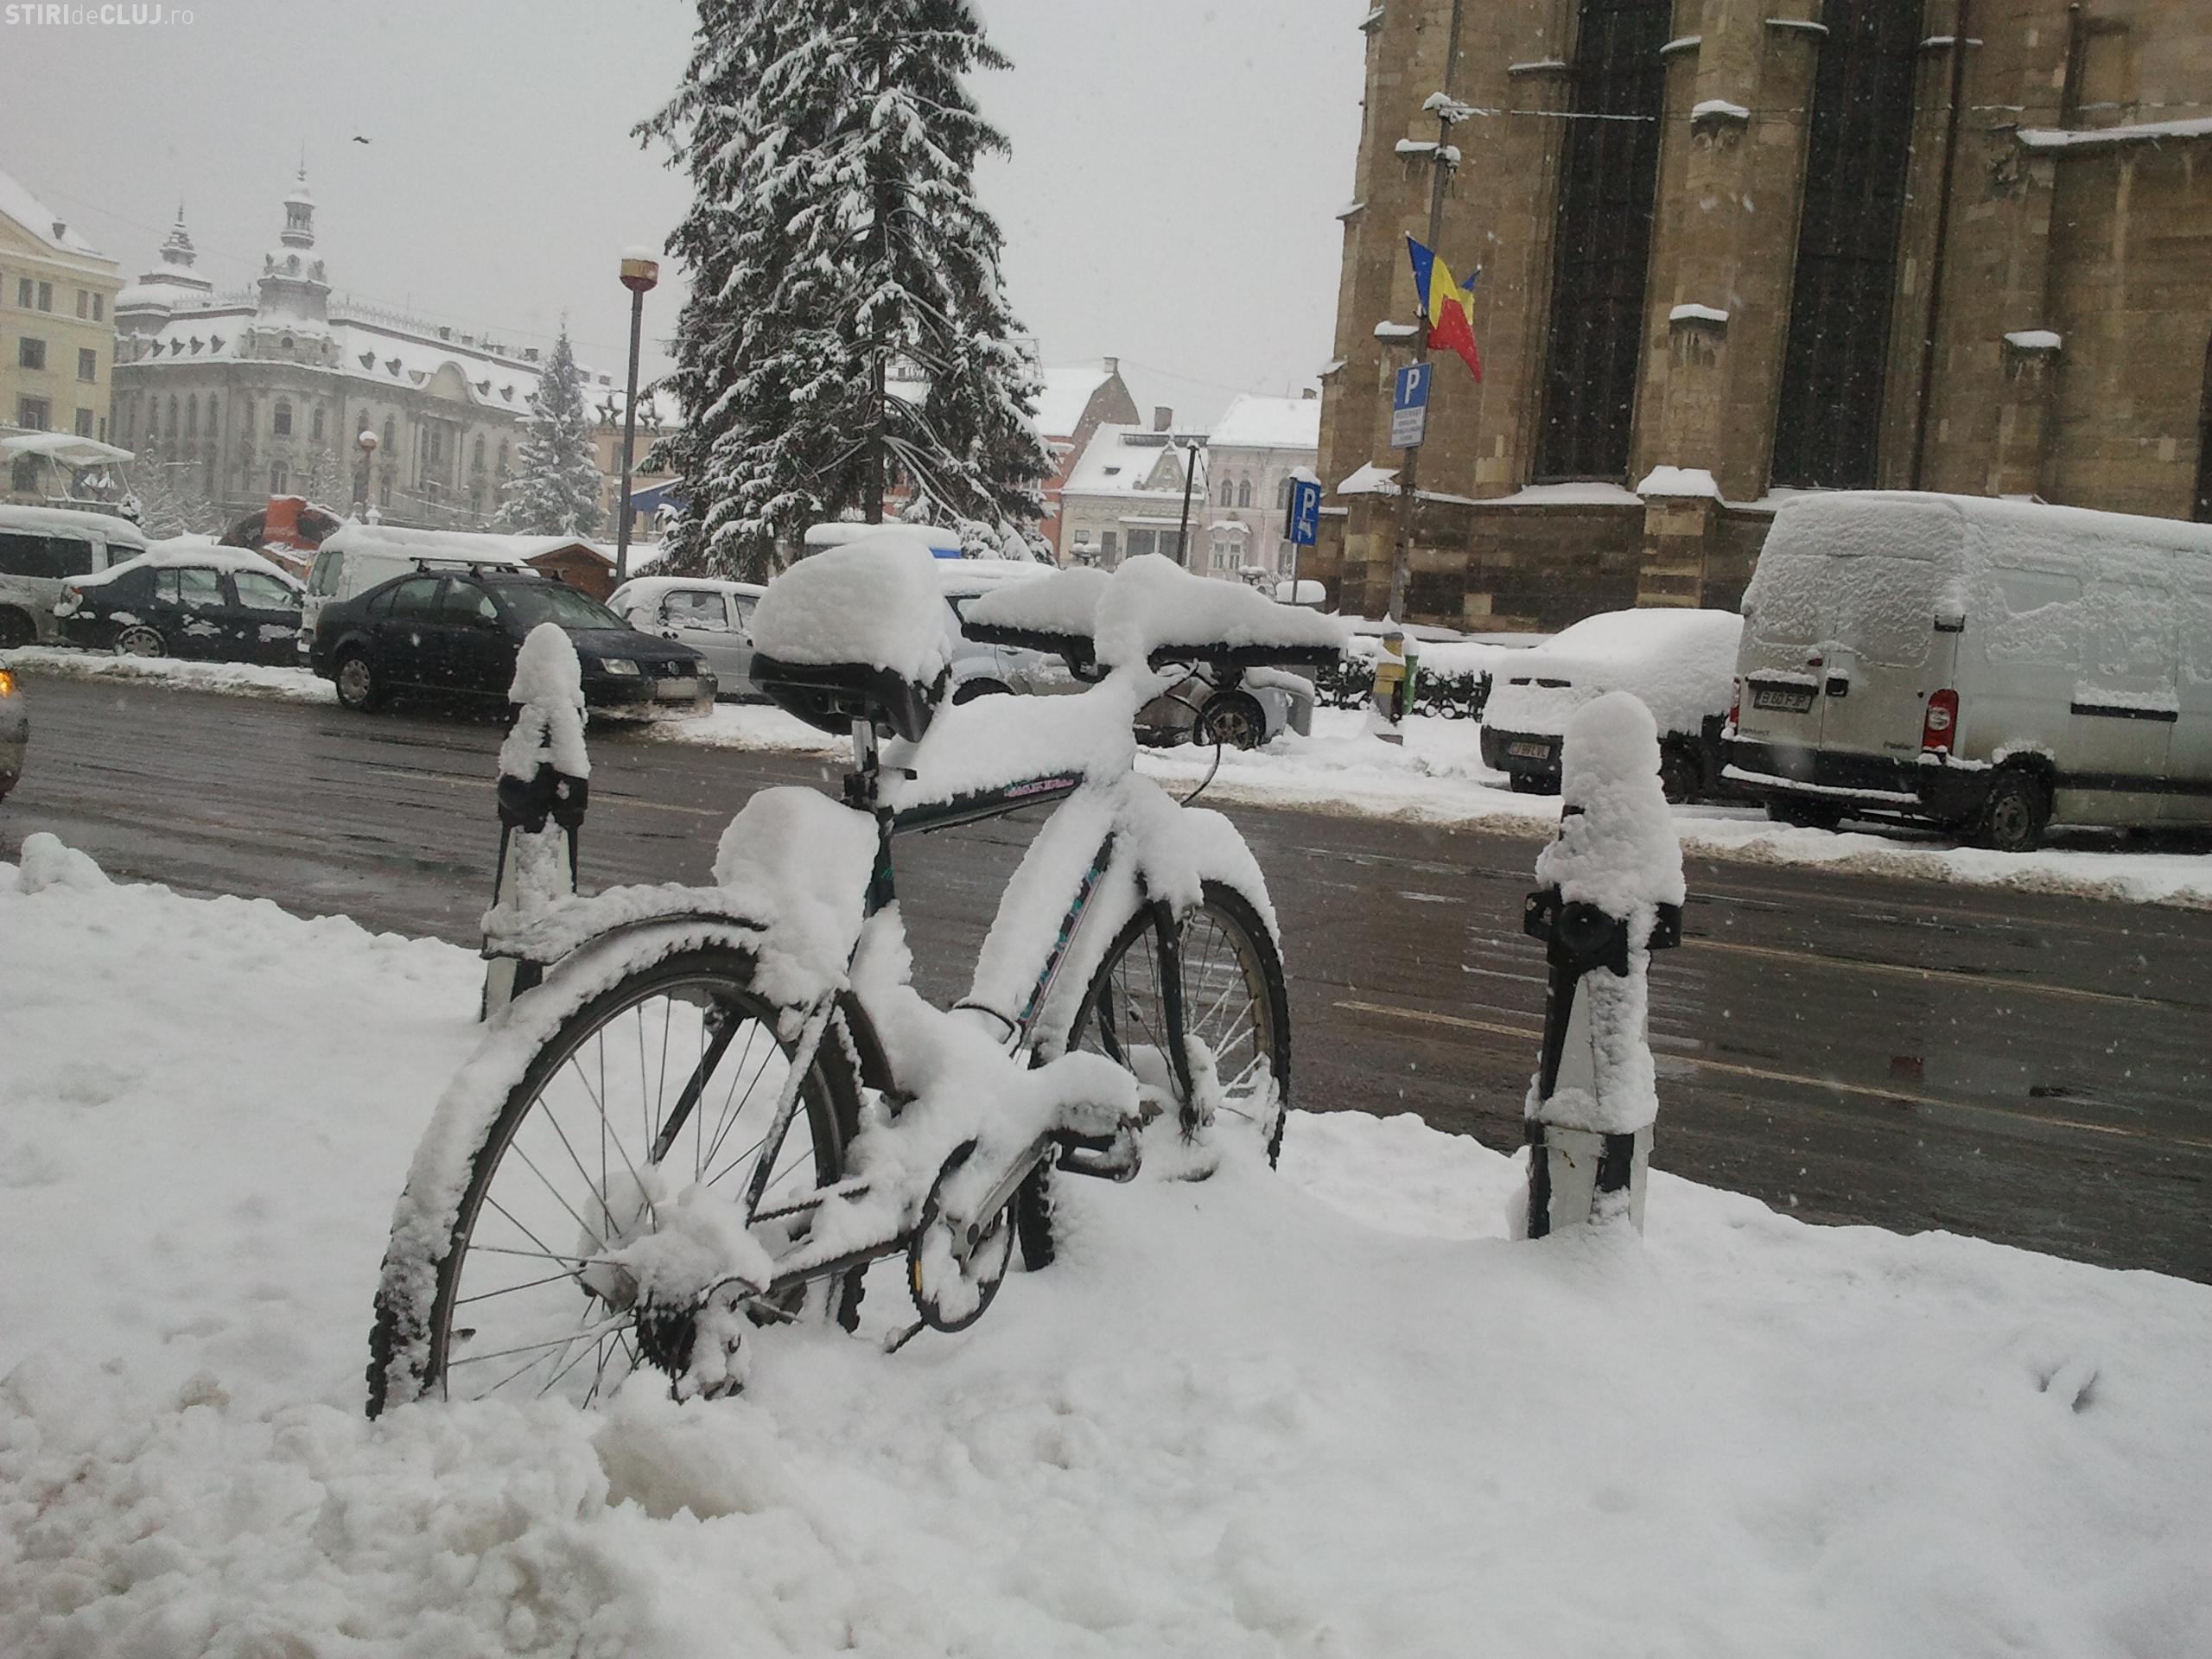 Vremea se răcește din acest weekend și vin ninsori în mai multe regiuni. Am putea vedea primii fulgi de zăpadă la Cluj